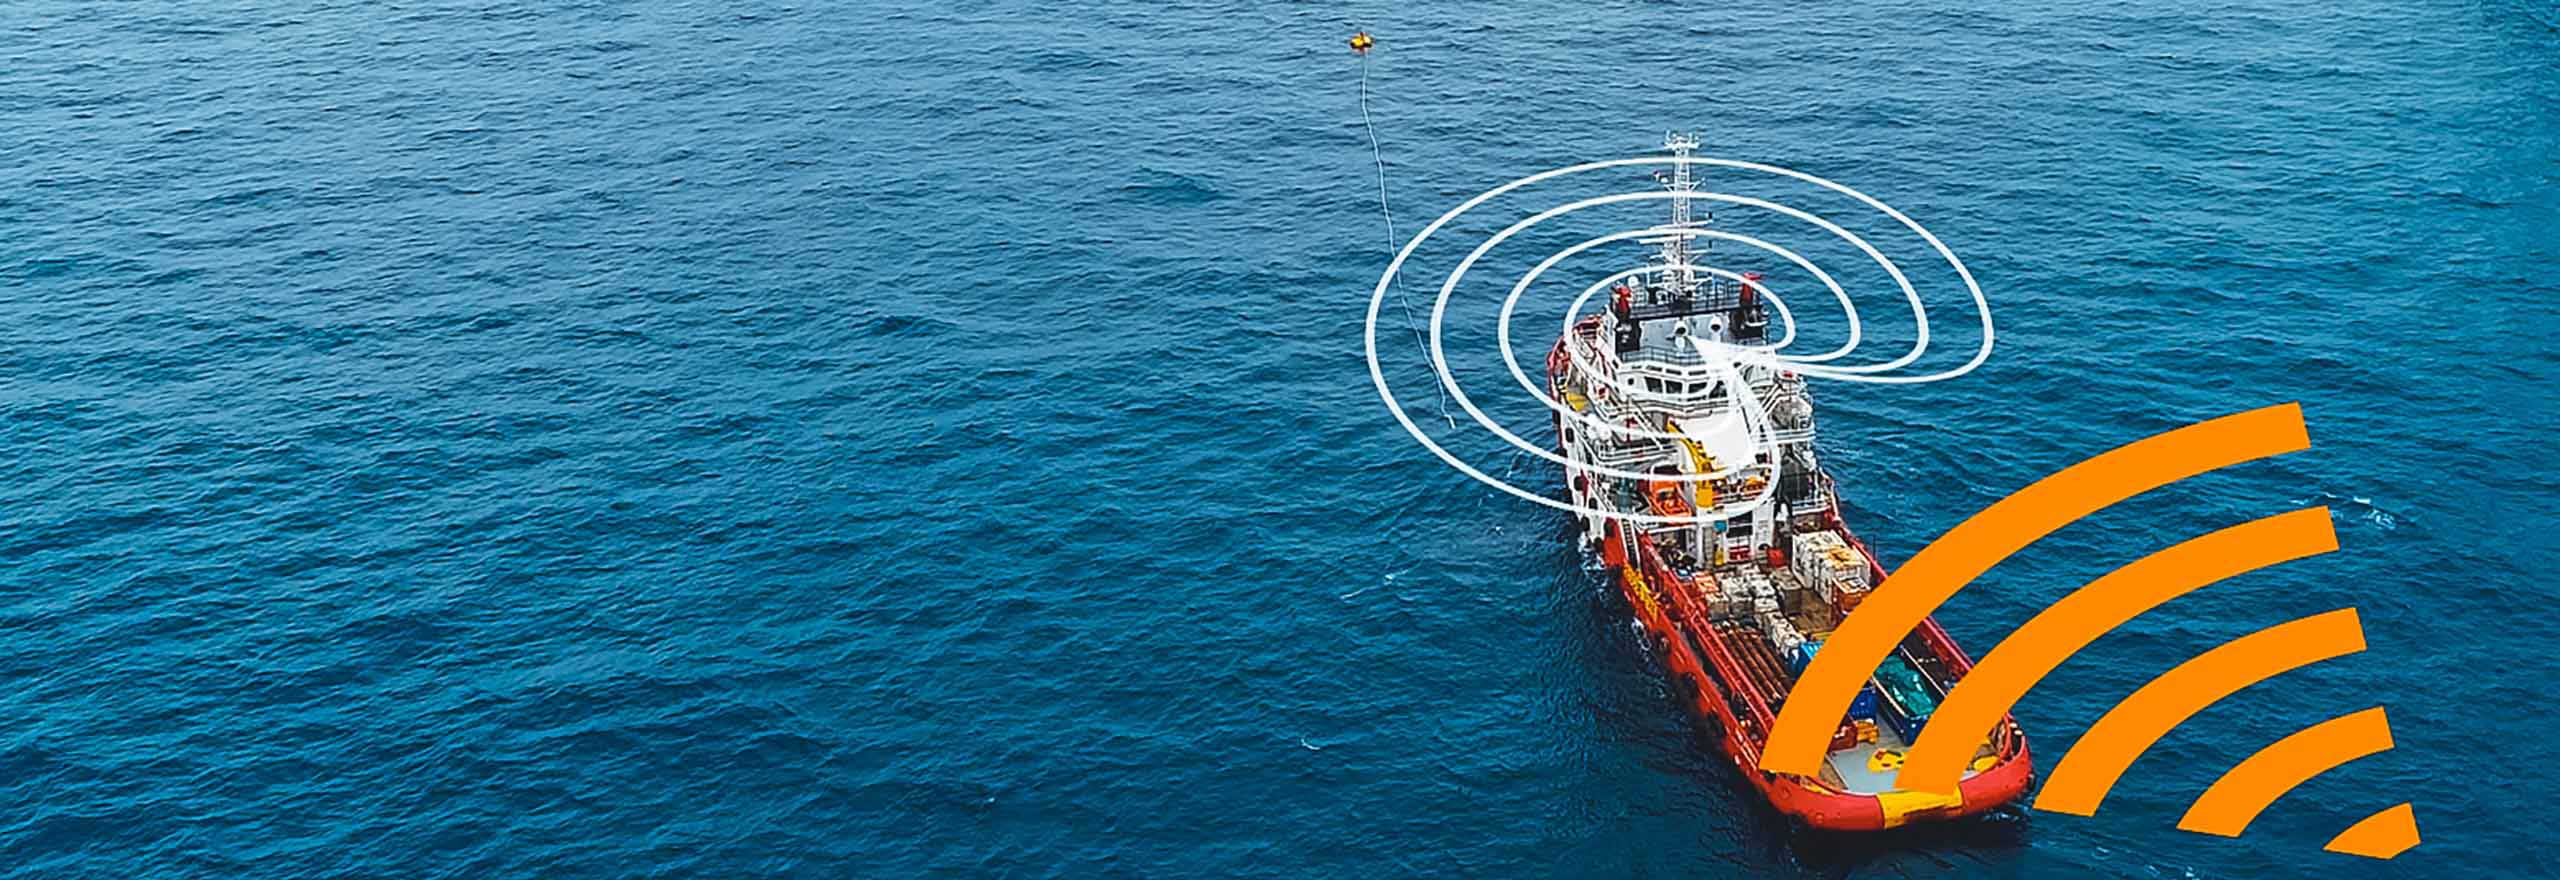 Comment la technologie anti-brouillage réagit et atténue le brouillage sur un navire rouge et blanc au milieu de l’océan près d’une plateforme pétrolière offshore.